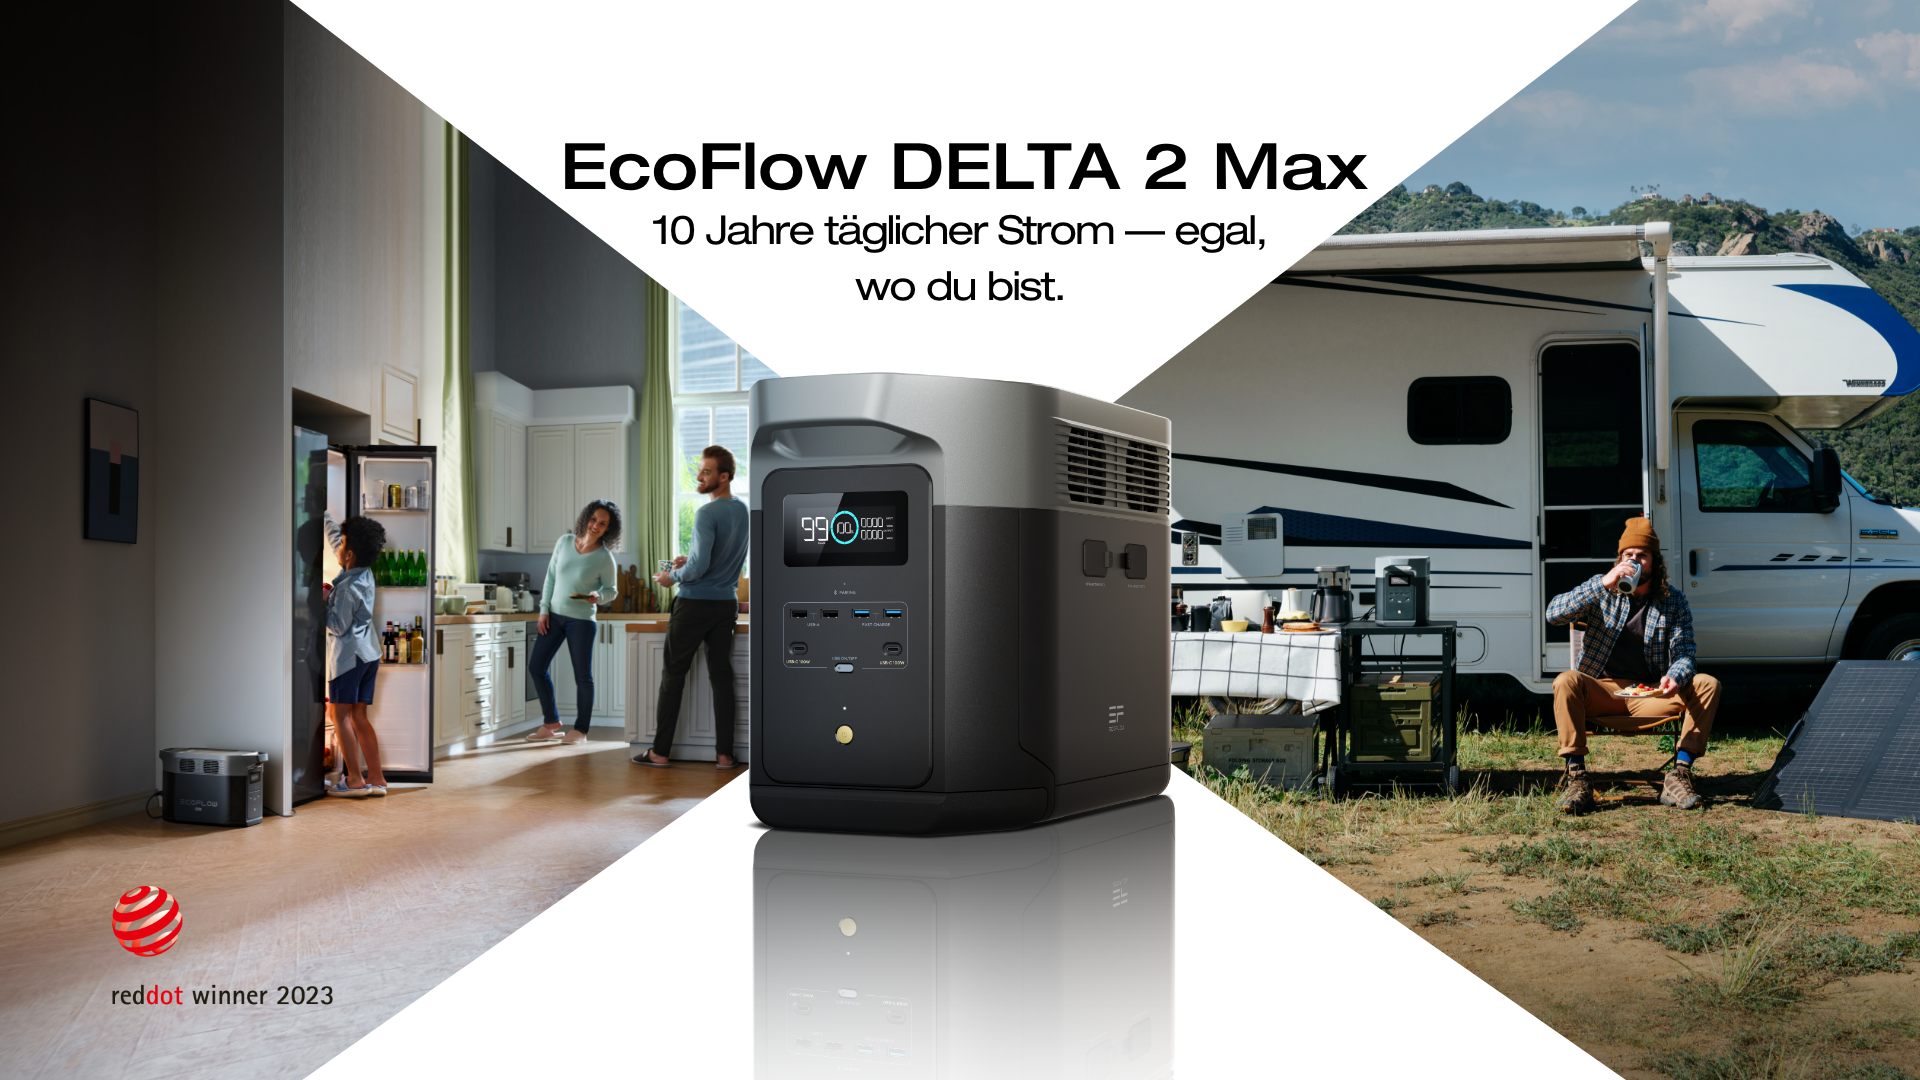 Netzvorrangschaltung für Wohnmobil/ auch für EcoFlow Delta